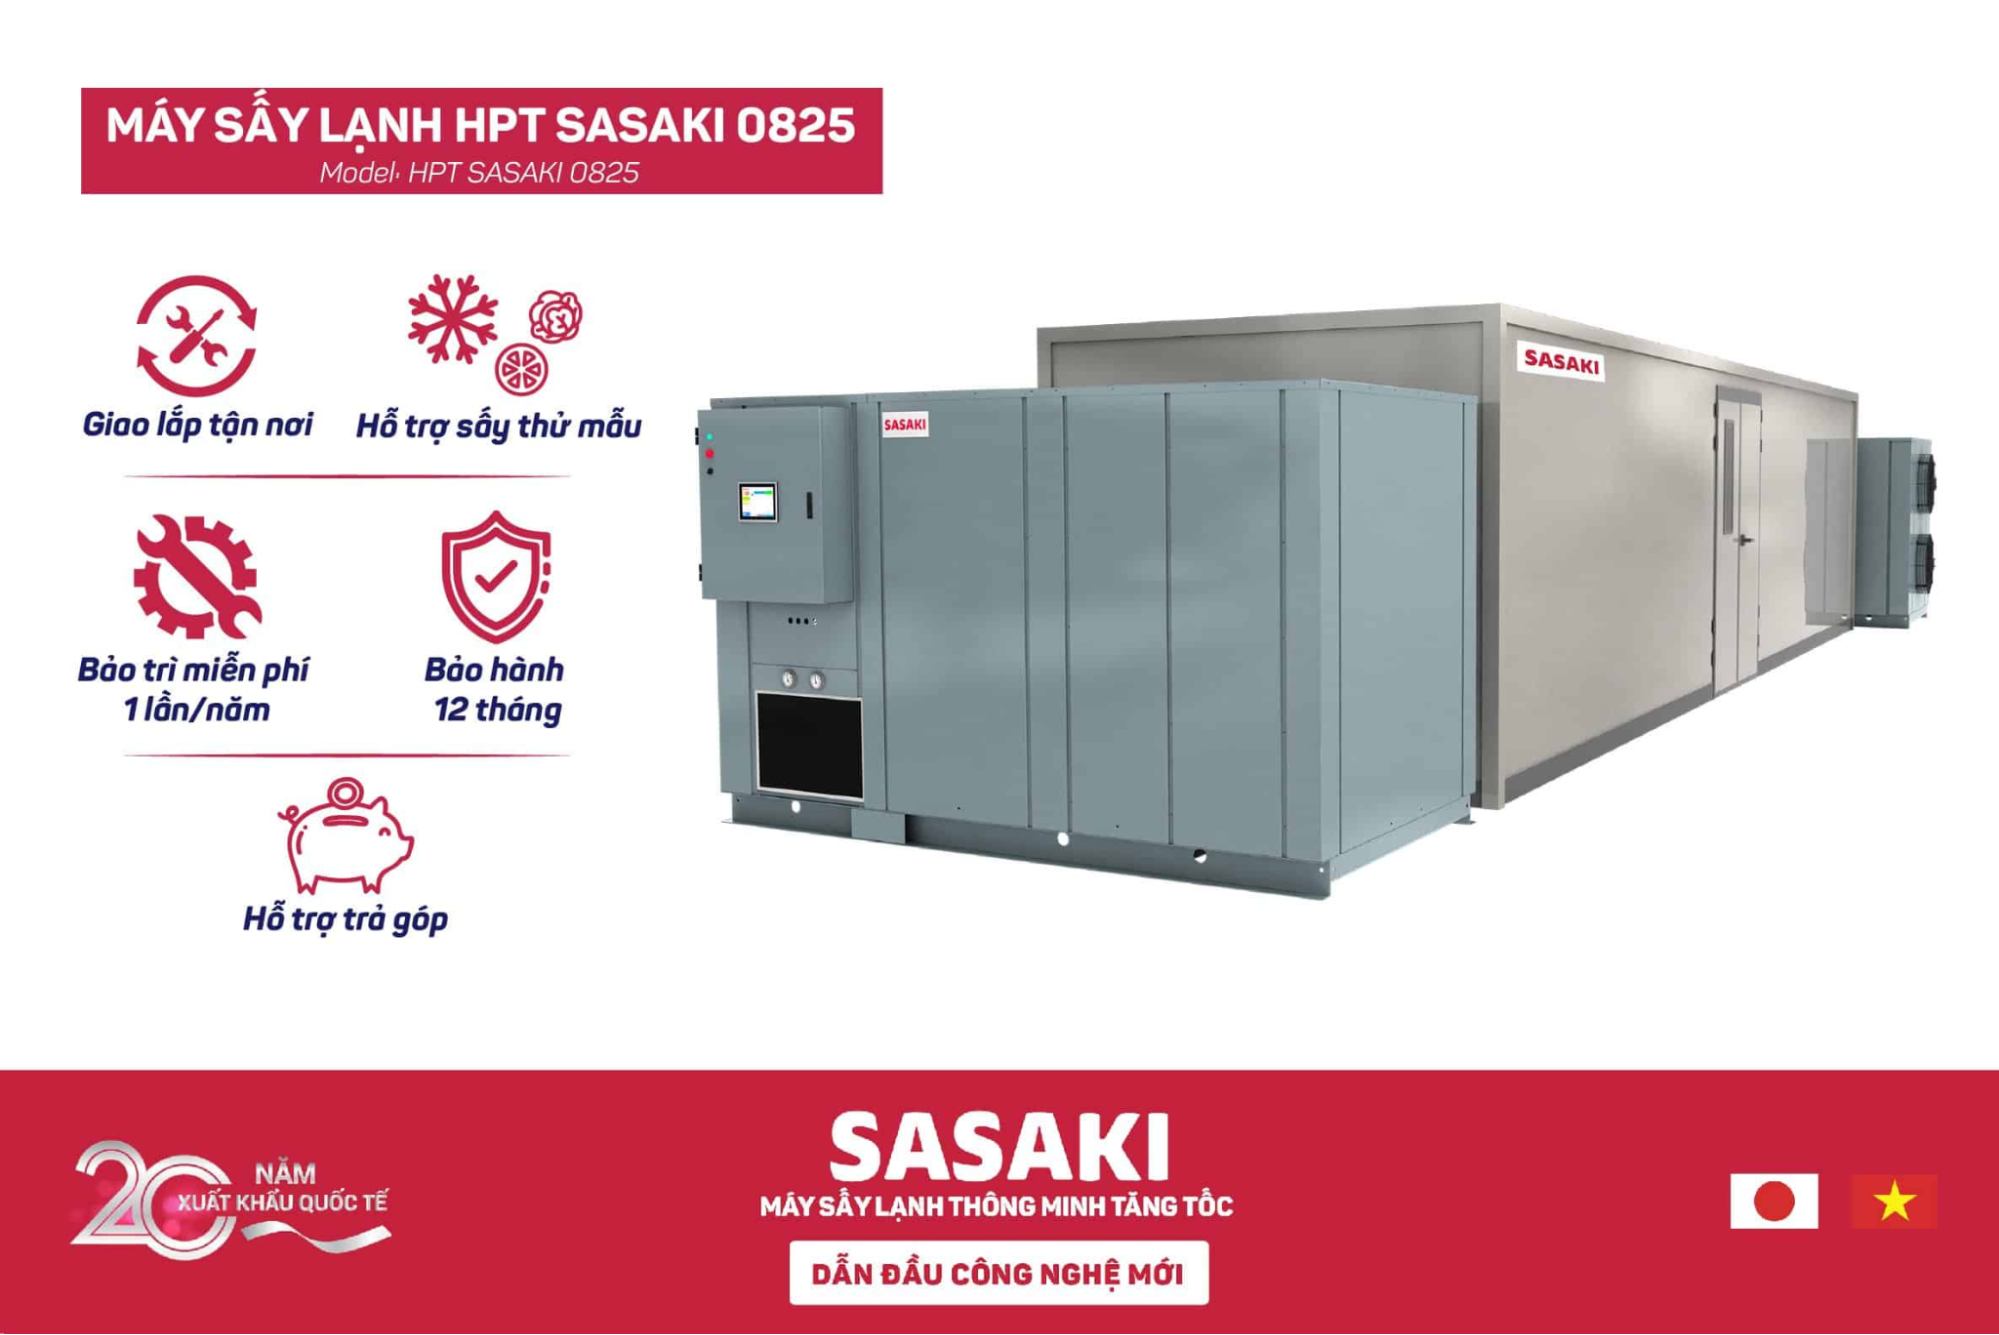 Máy sấy lạnh SASAKI hiện nay đều được sản xuất dựa trên tiêu chuẩn công nghệ Nhật Bản